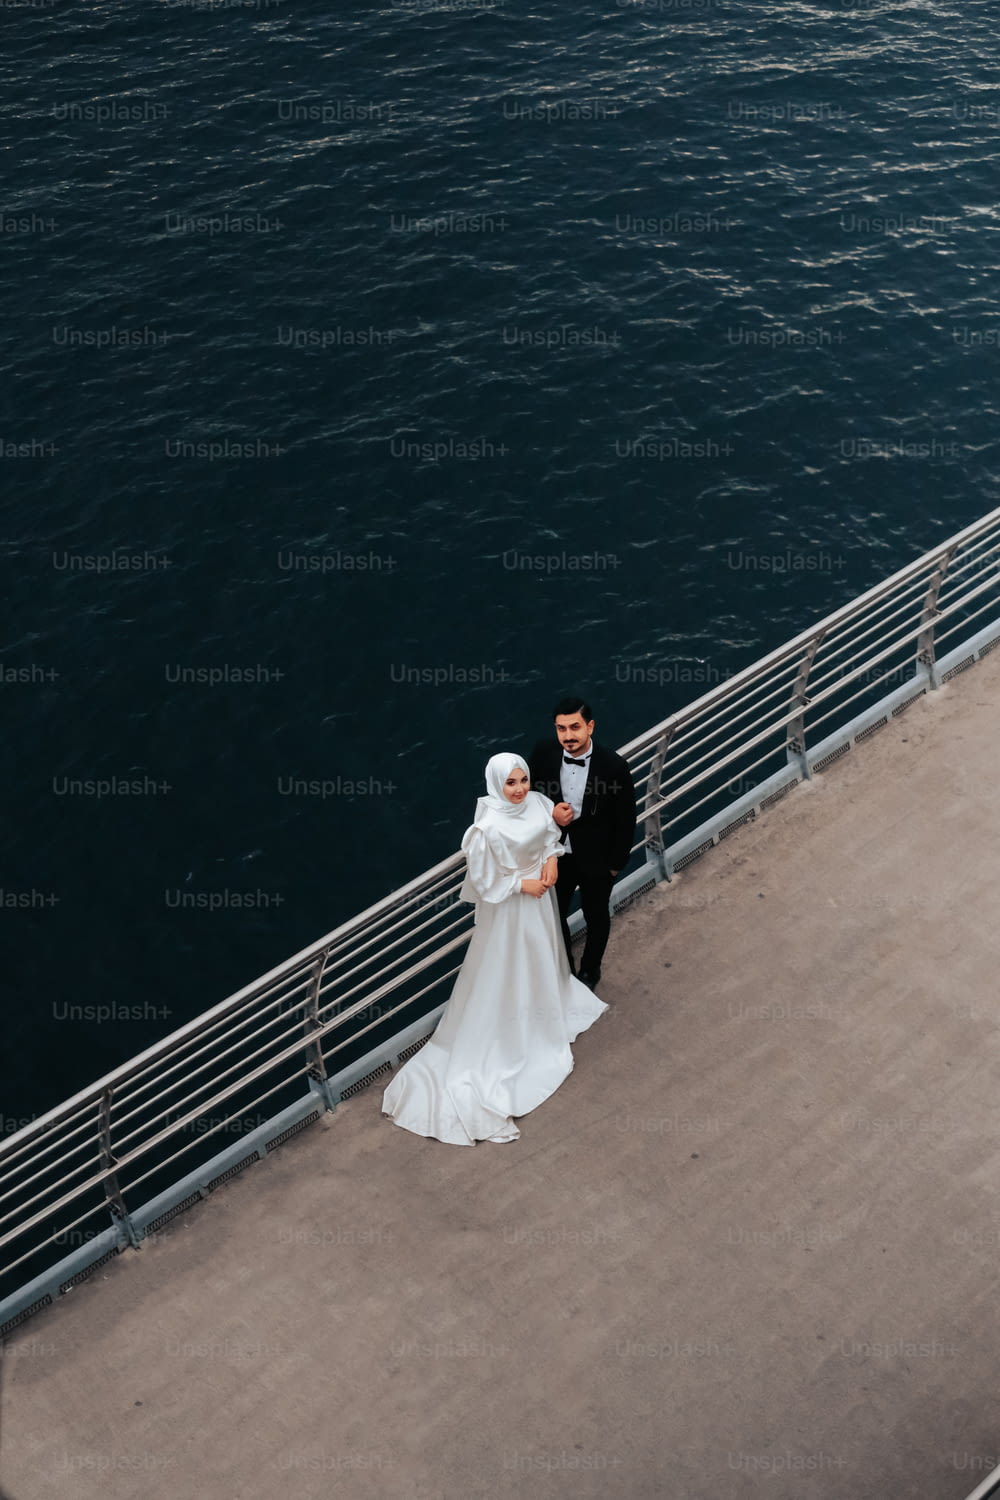 Una sposa e uno sposo in piedi su un molo vicino all'acqua